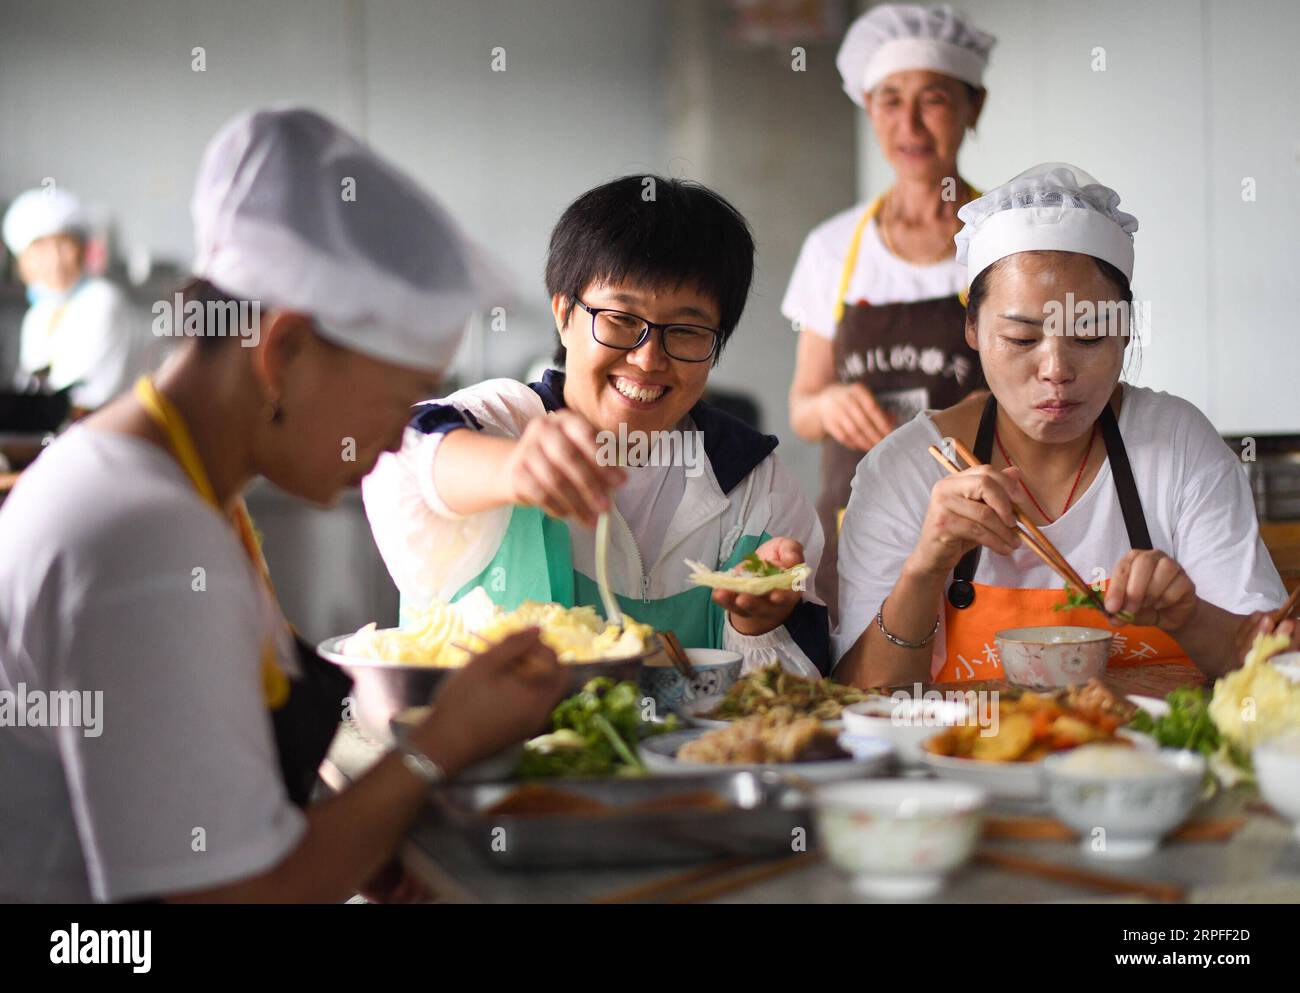 190923 -- PEKING, 23. September 2019 -- Li Chencan C und Arbeiter essen in einem Workshop im Dorf Xingbei der Gemeinde Wanfa im Bayan County, nordöstliche Provinz Heilongjiang, 30. August 2019. Li Chencan, eine in den 1980er Jahren im Dorf Xingbei geborene Landwirtin, eröffnete 2014 mit Hilfe ihrer Familienmitglieder einen Online-Shop, um landwirtschaftliche Produkte aus Nordostchina zu verkaufen. Um den Online-Markt zu erweitern, lernte Li nicht nur die Methoden des Betriebs und der Pflege von Online-Shops selbst kennen, sondern stellte auch lokale Landwirte ein, um den Shop besser zu verwalten und Verträge mit verarmten Haushalten abzuschließen Stockfoto